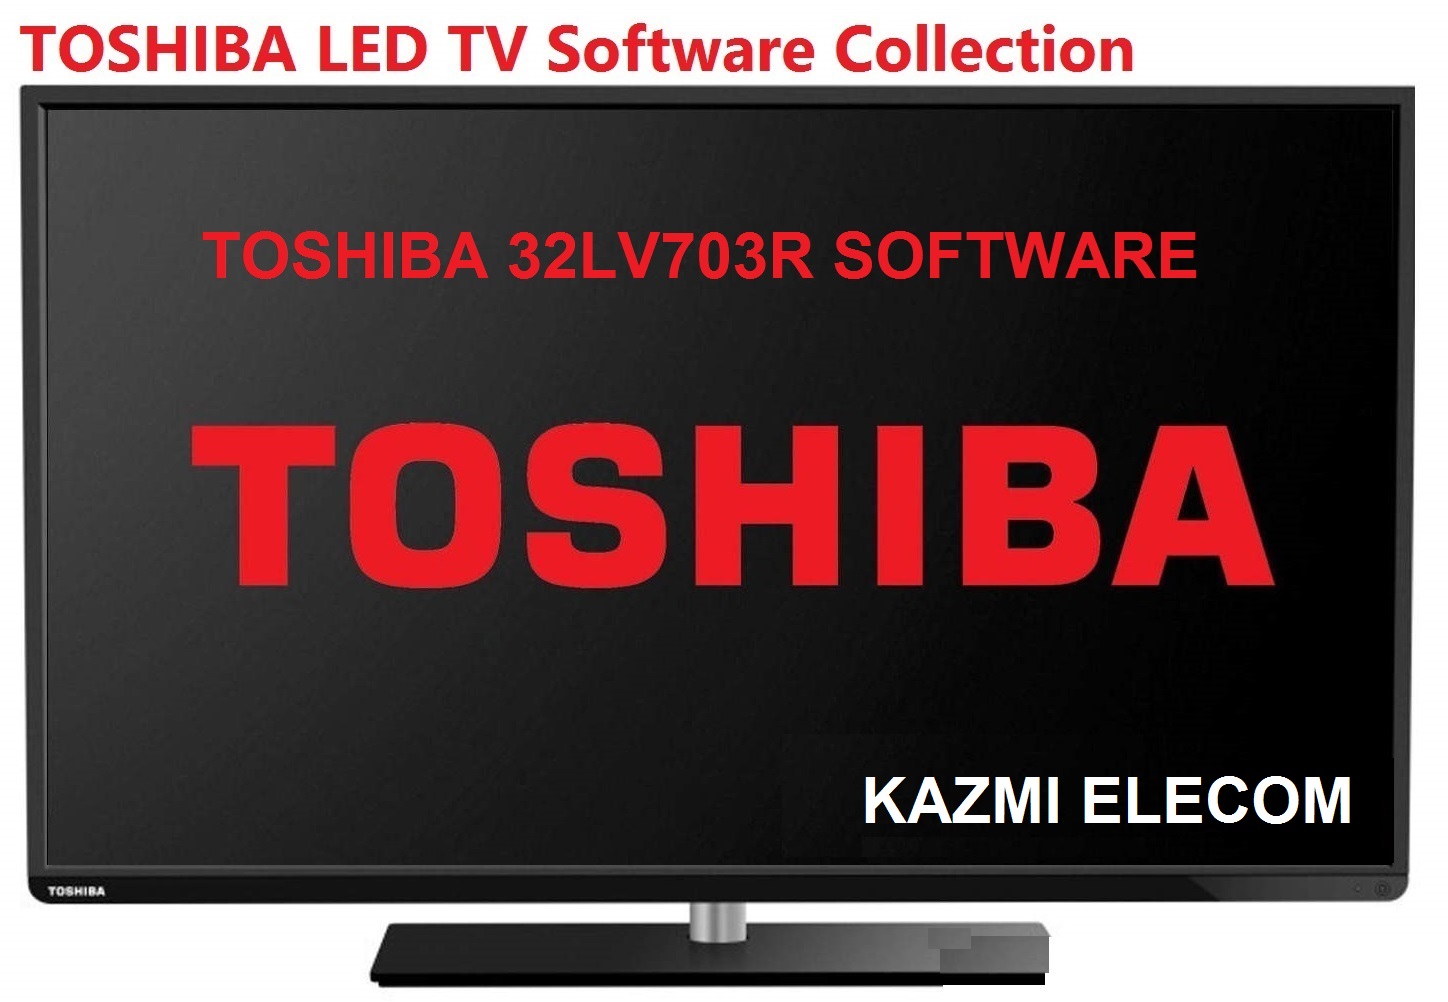 Toshiba 32Lv703R